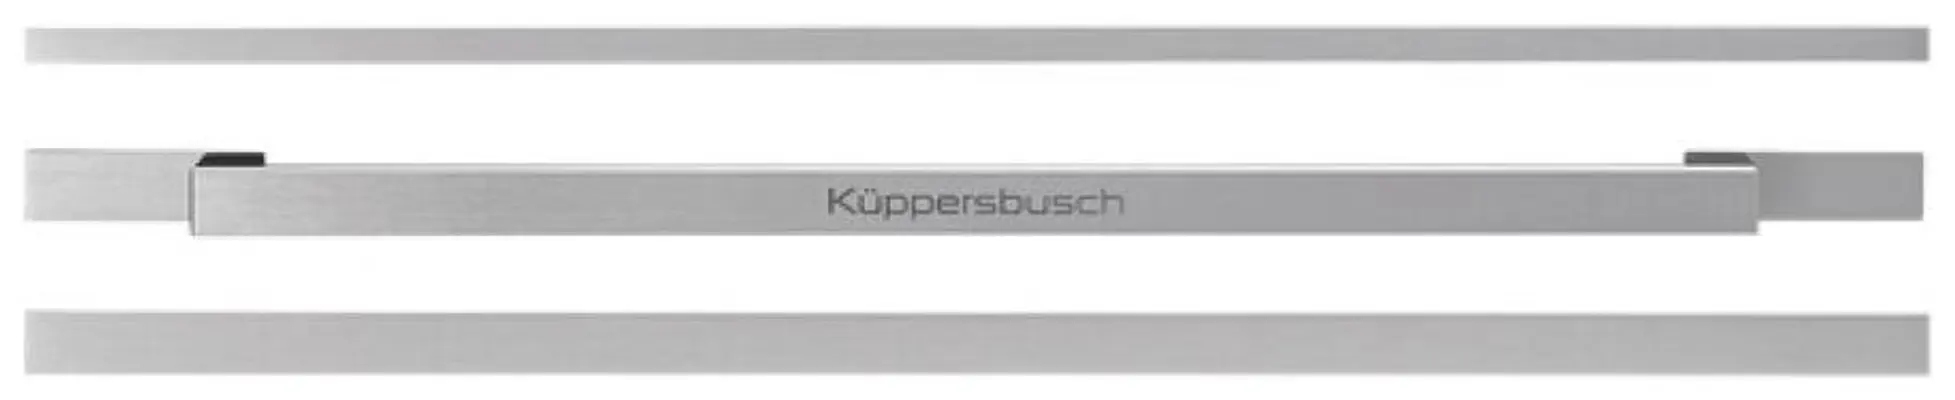 DK1000-Kuppersbusch-Oven-accessoires